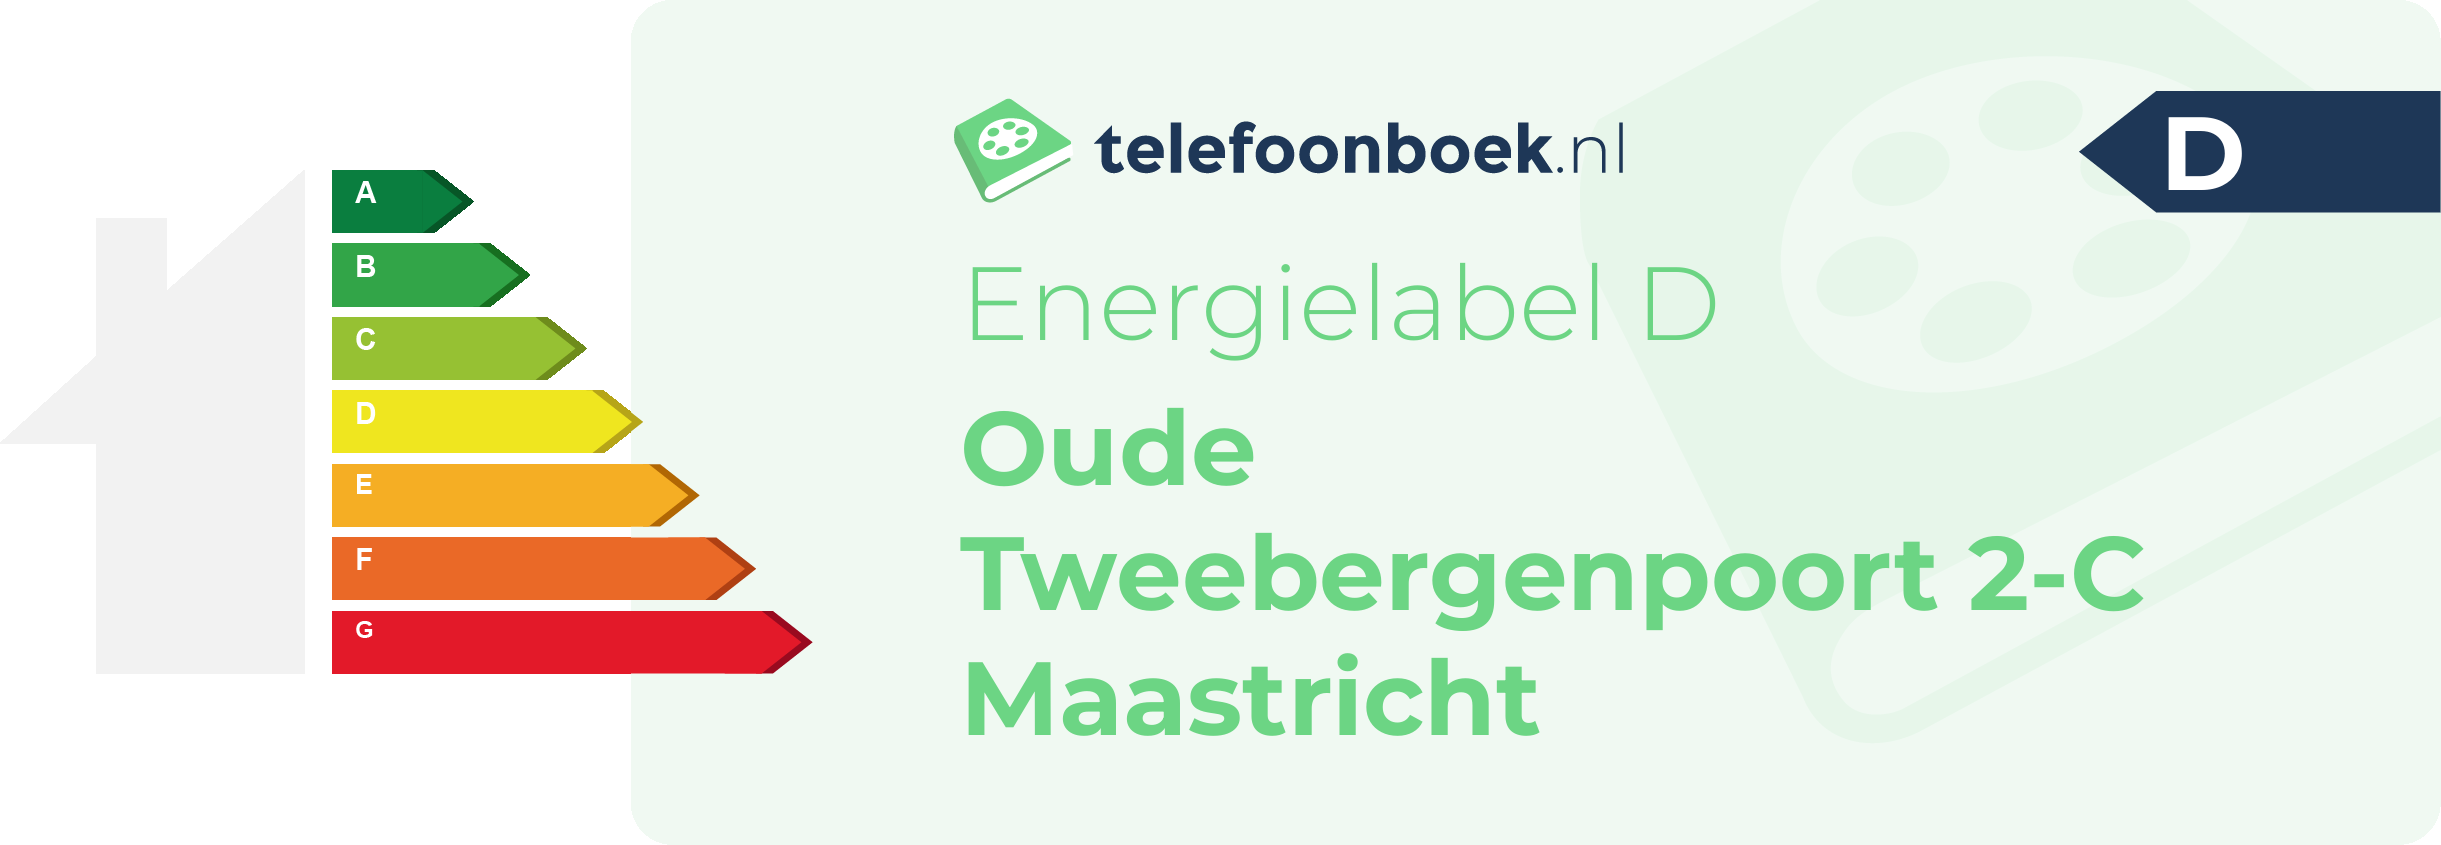 Energielabel Oude Tweebergenpoort 2-C Maastricht